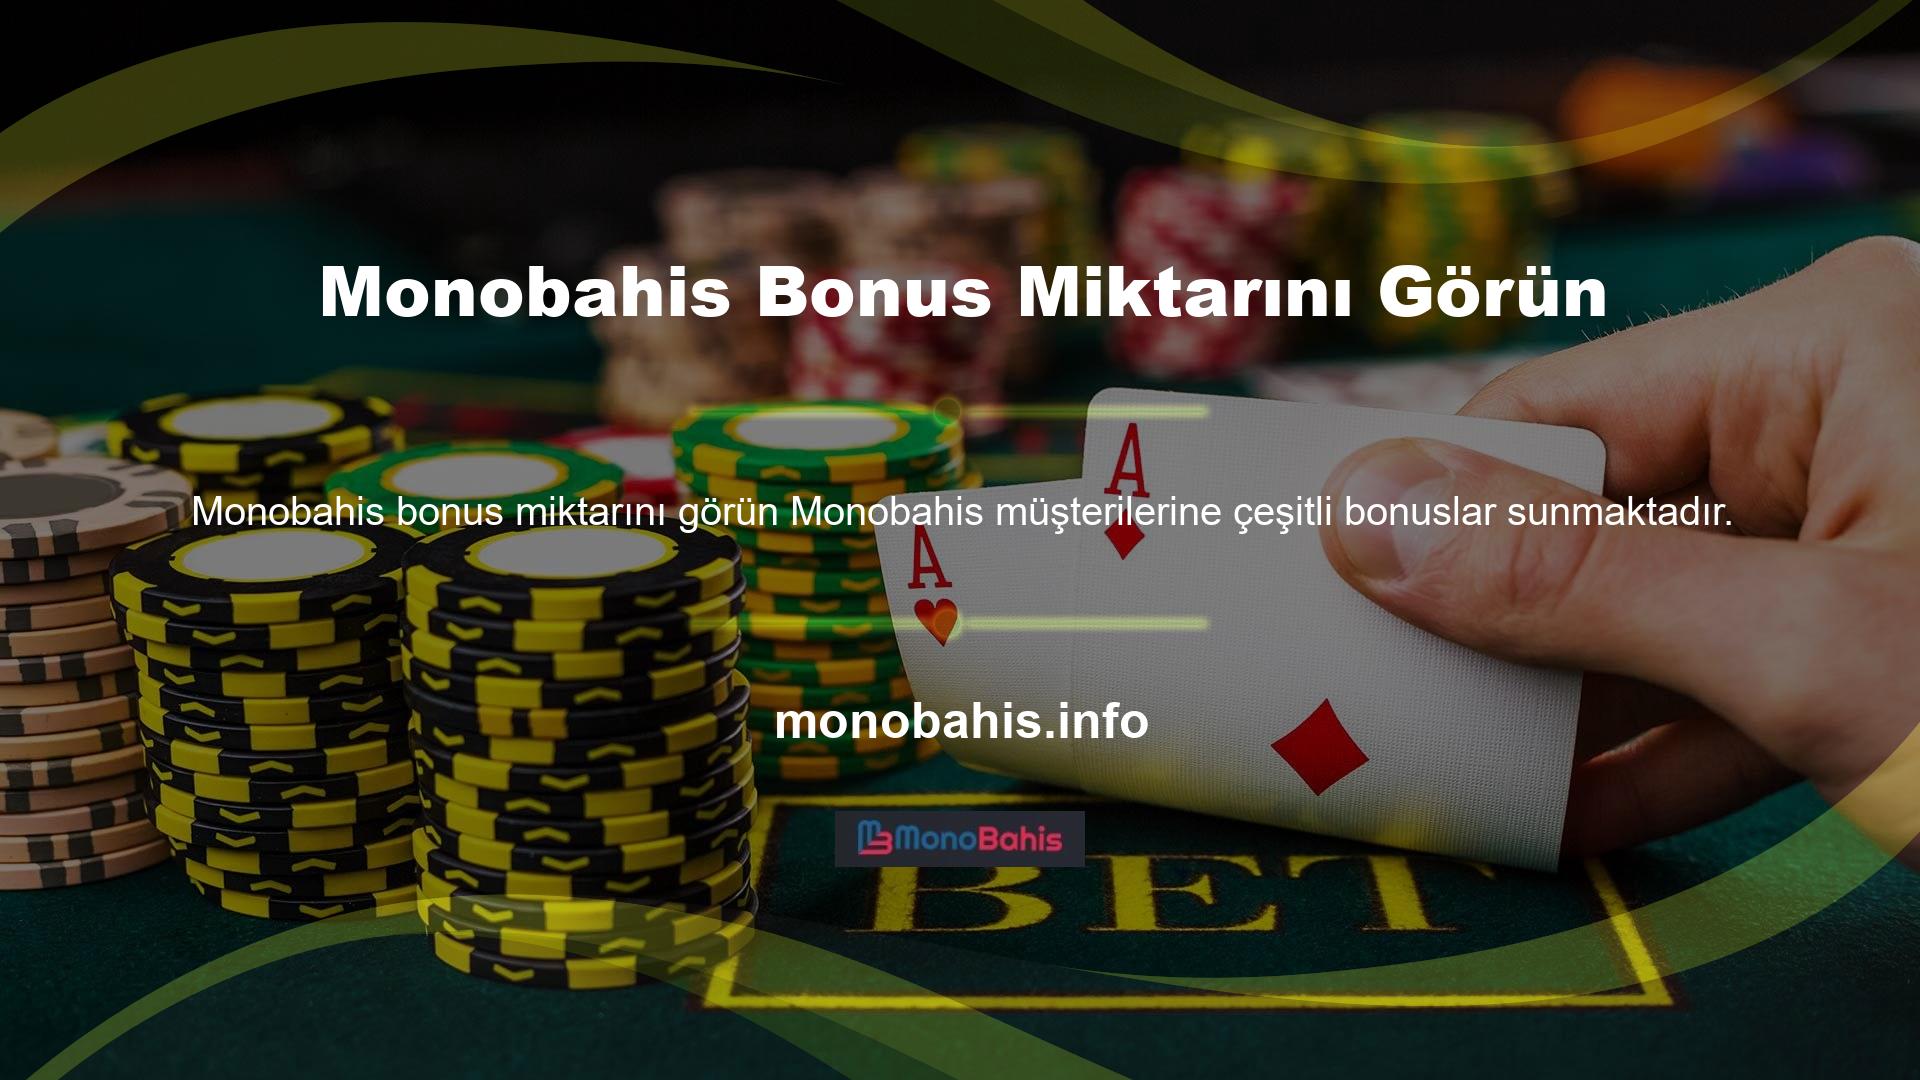 Ancak kullanıcılar Monobahis bonus miktarı ve hangi yatırım için hangi bonusları alabilecekleri ile ilgilenmektedir